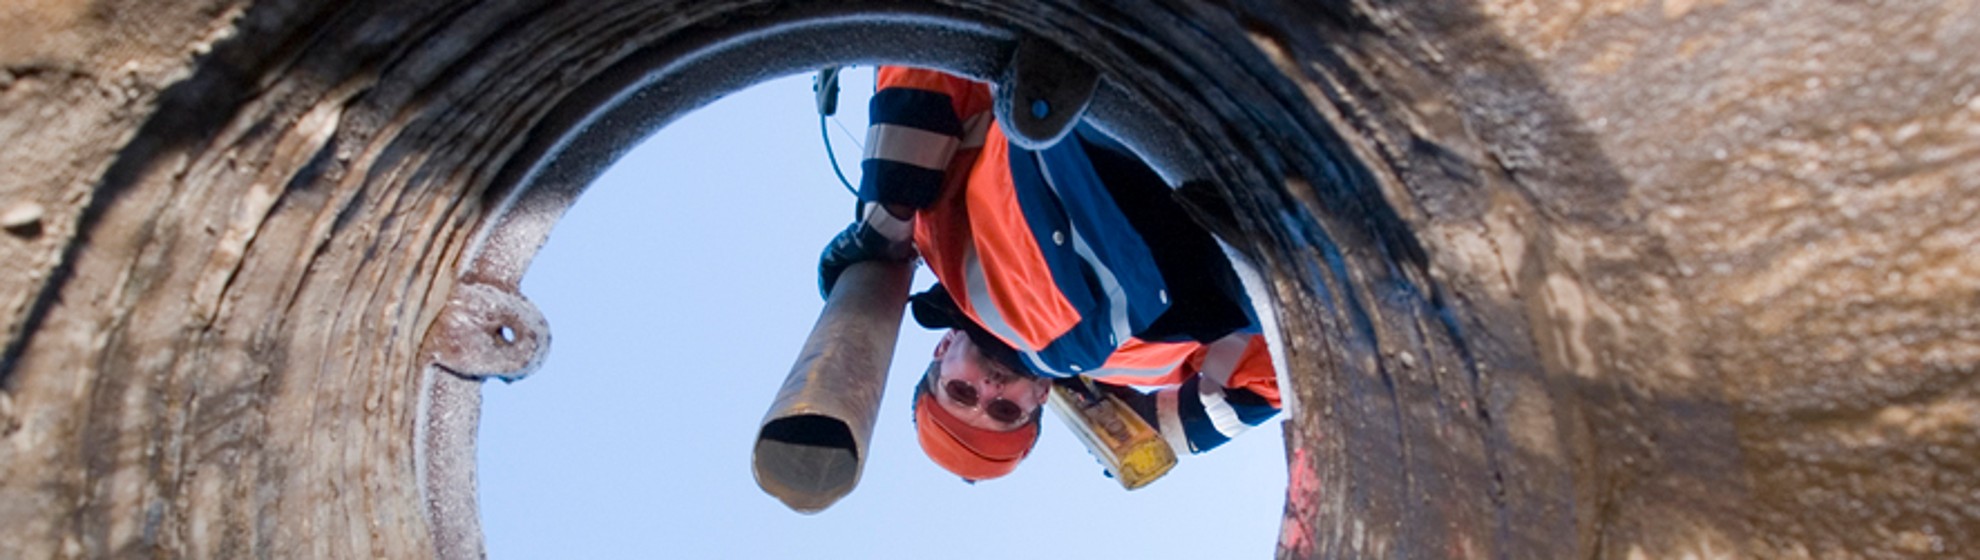 ein Kanalarbeiter schaut von oben in den Kanal hinunter mit dem Schlauch in der Hand